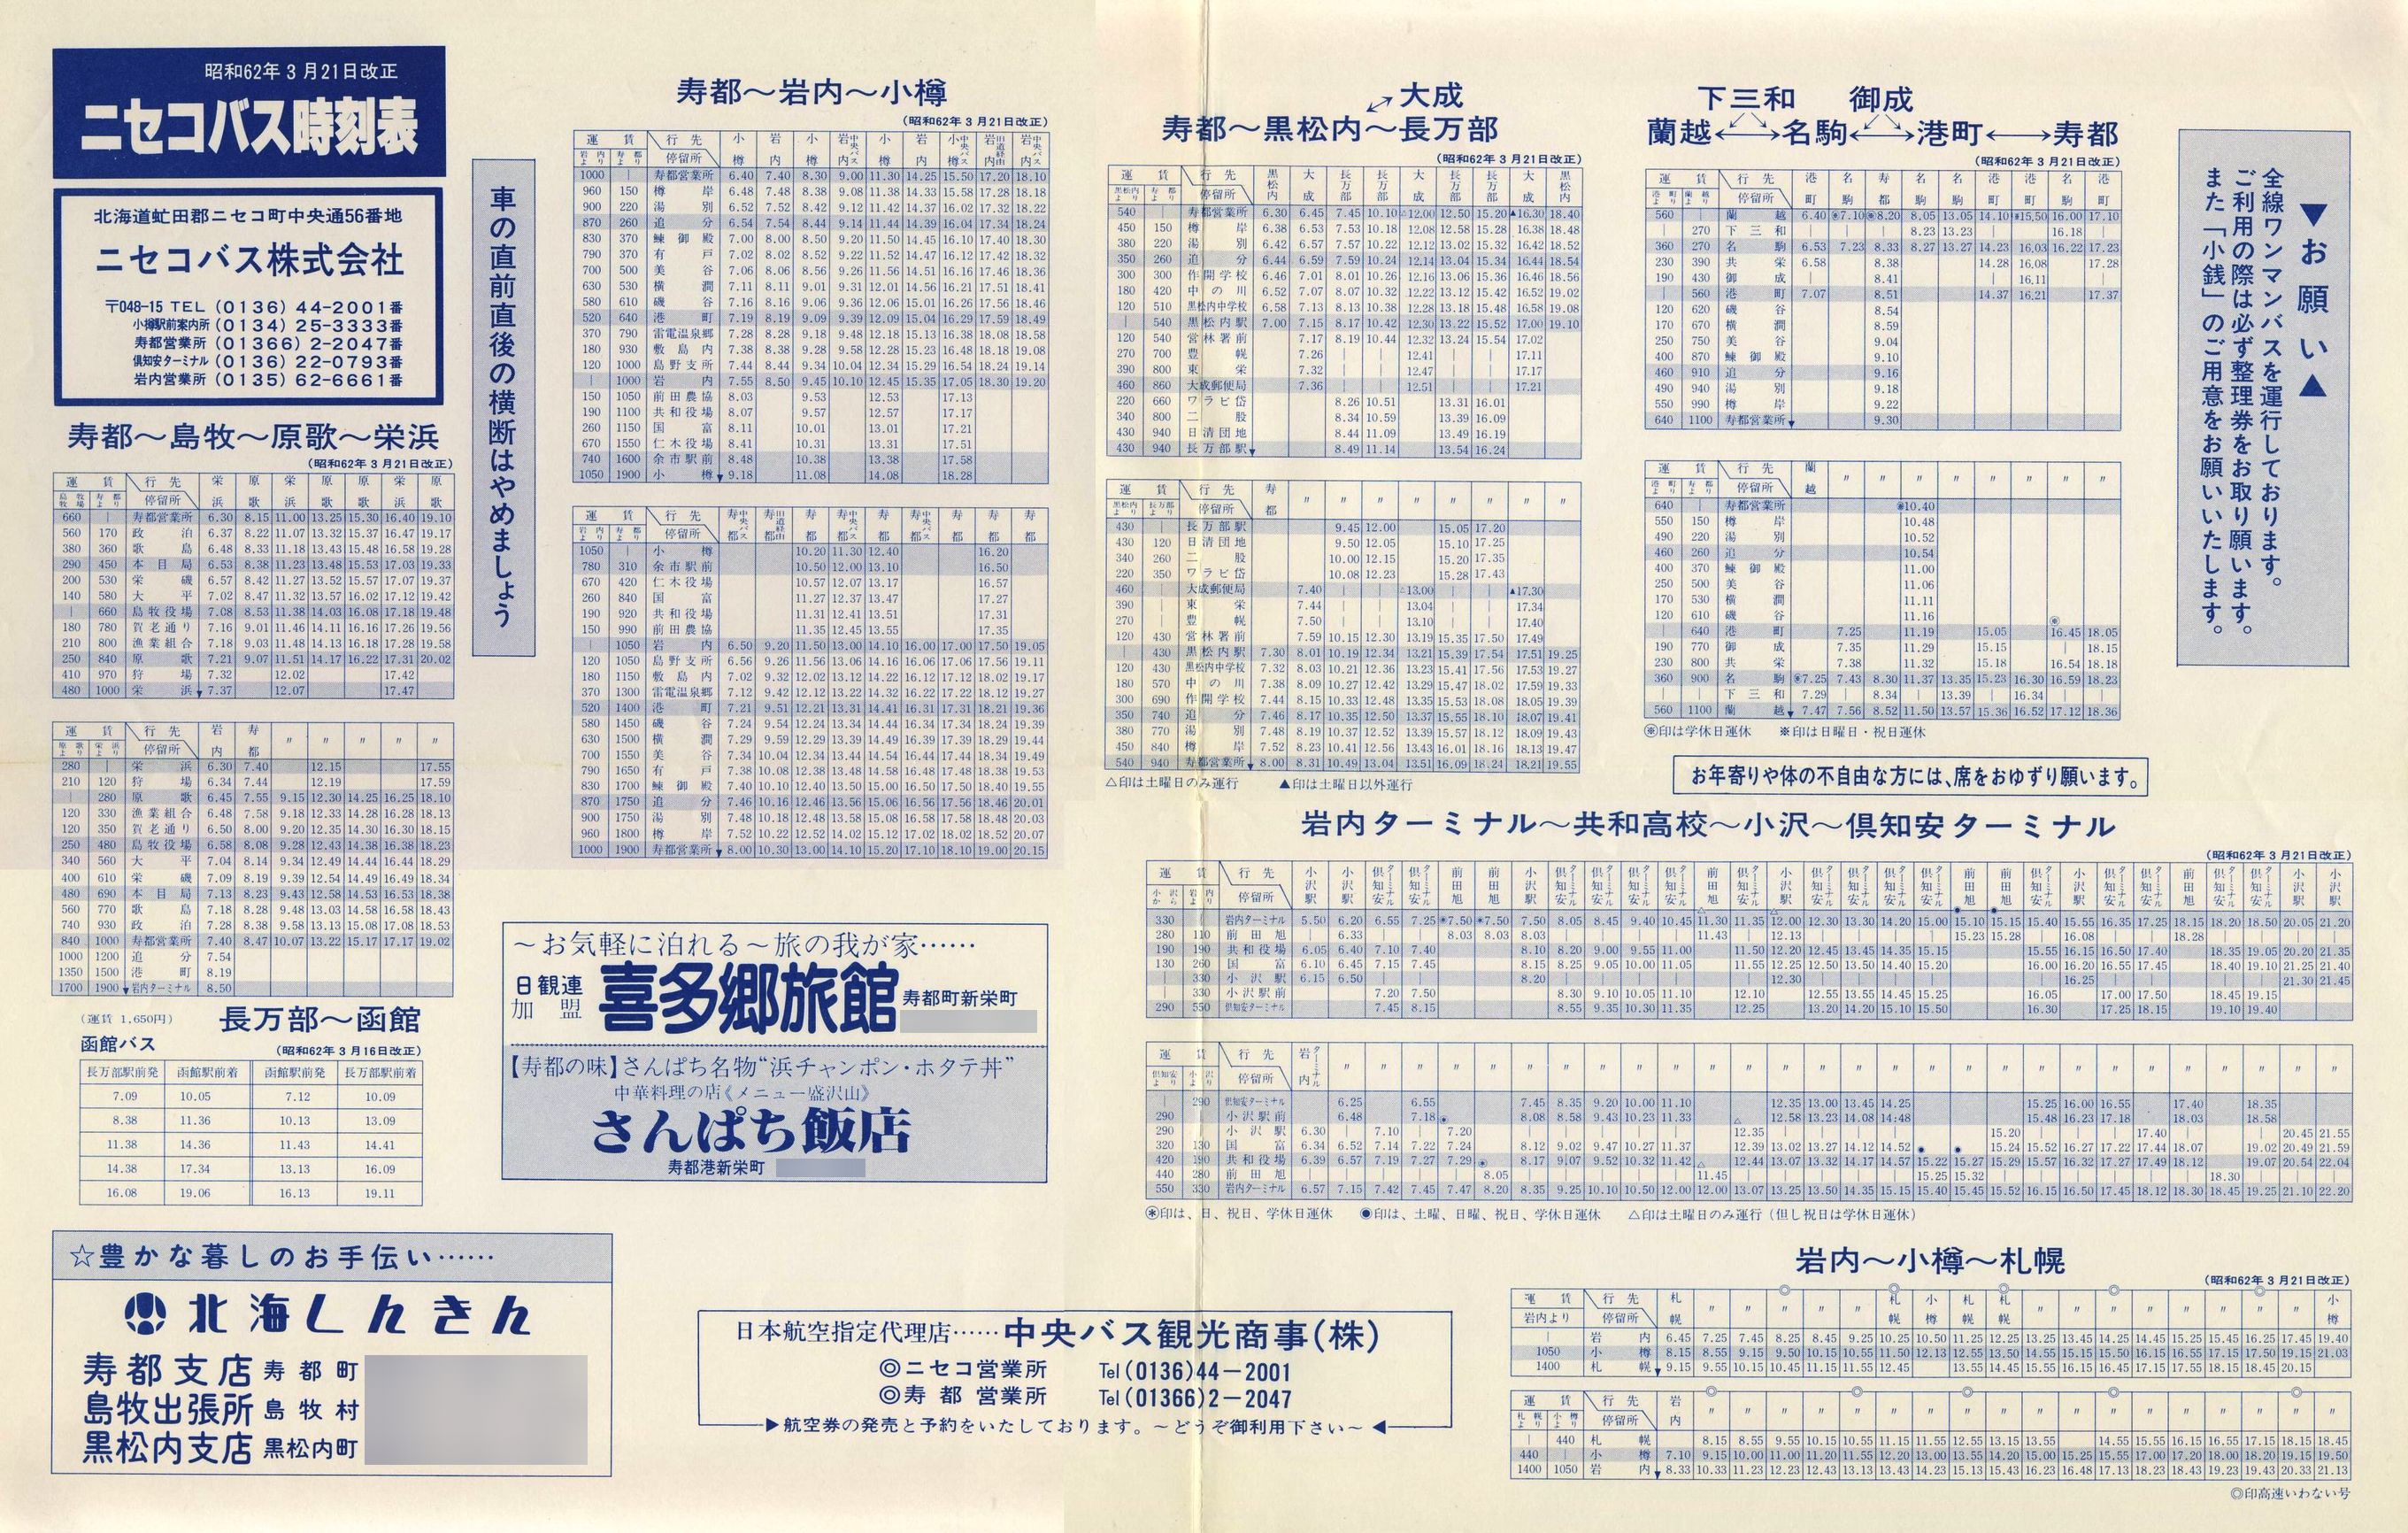 1987-03-21改正_ニセコバス_寿都・岩内営業所管内時刻表